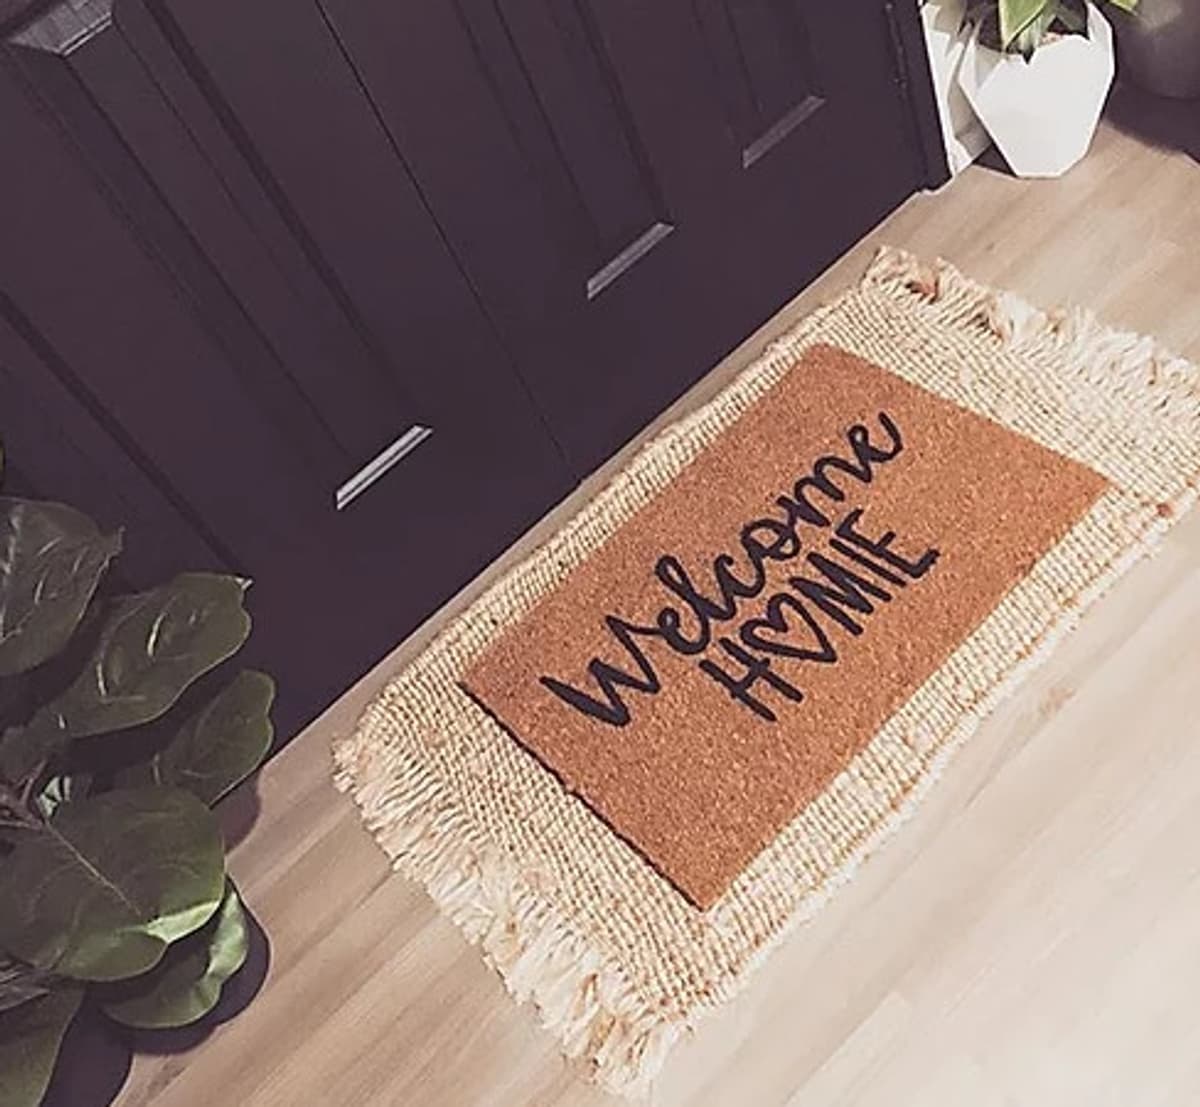 Welcome Homie Doormat